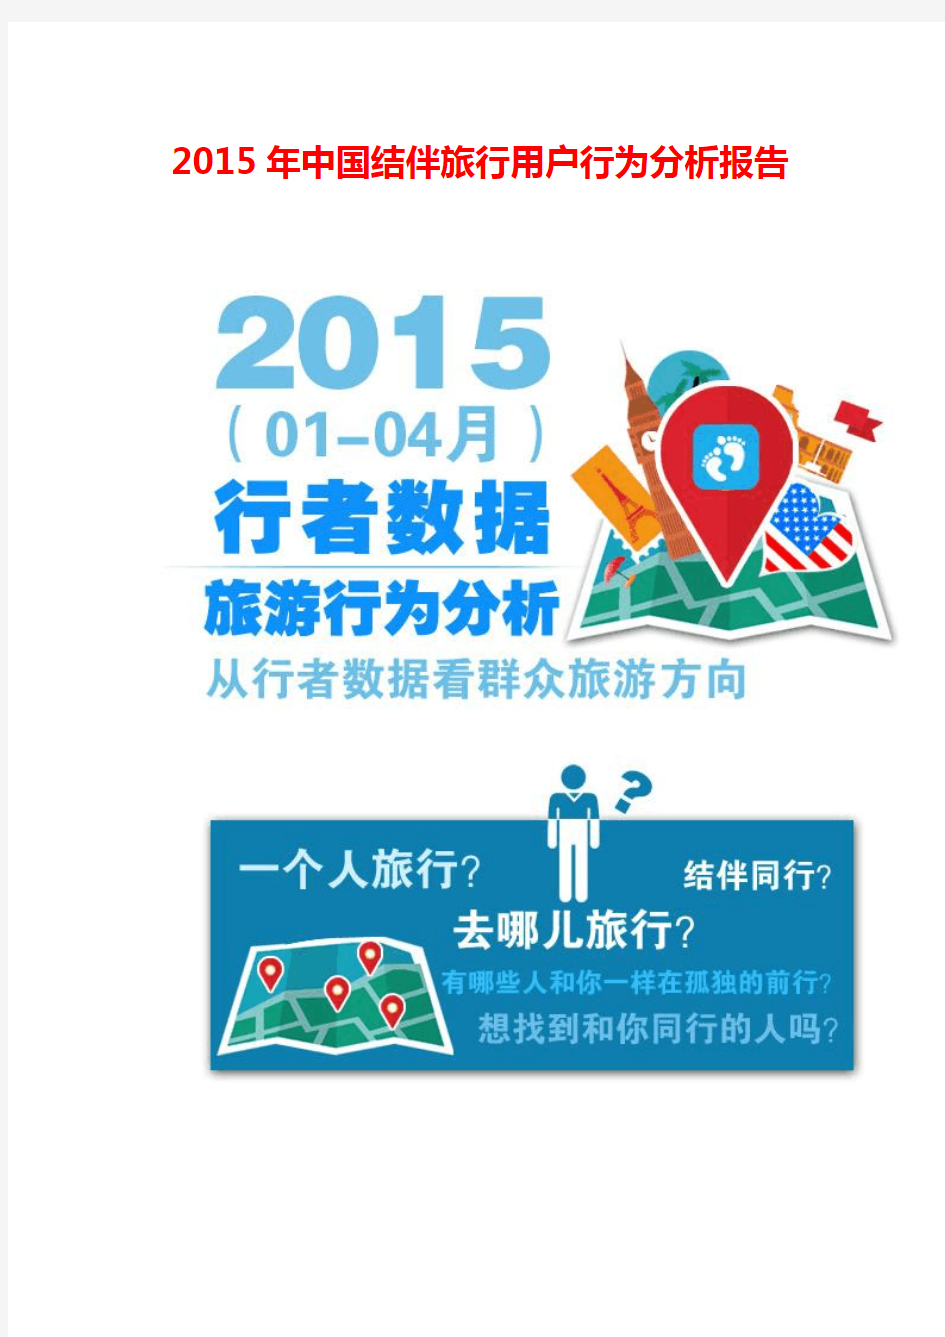 2015年中国结伴旅行用户行为分析报告